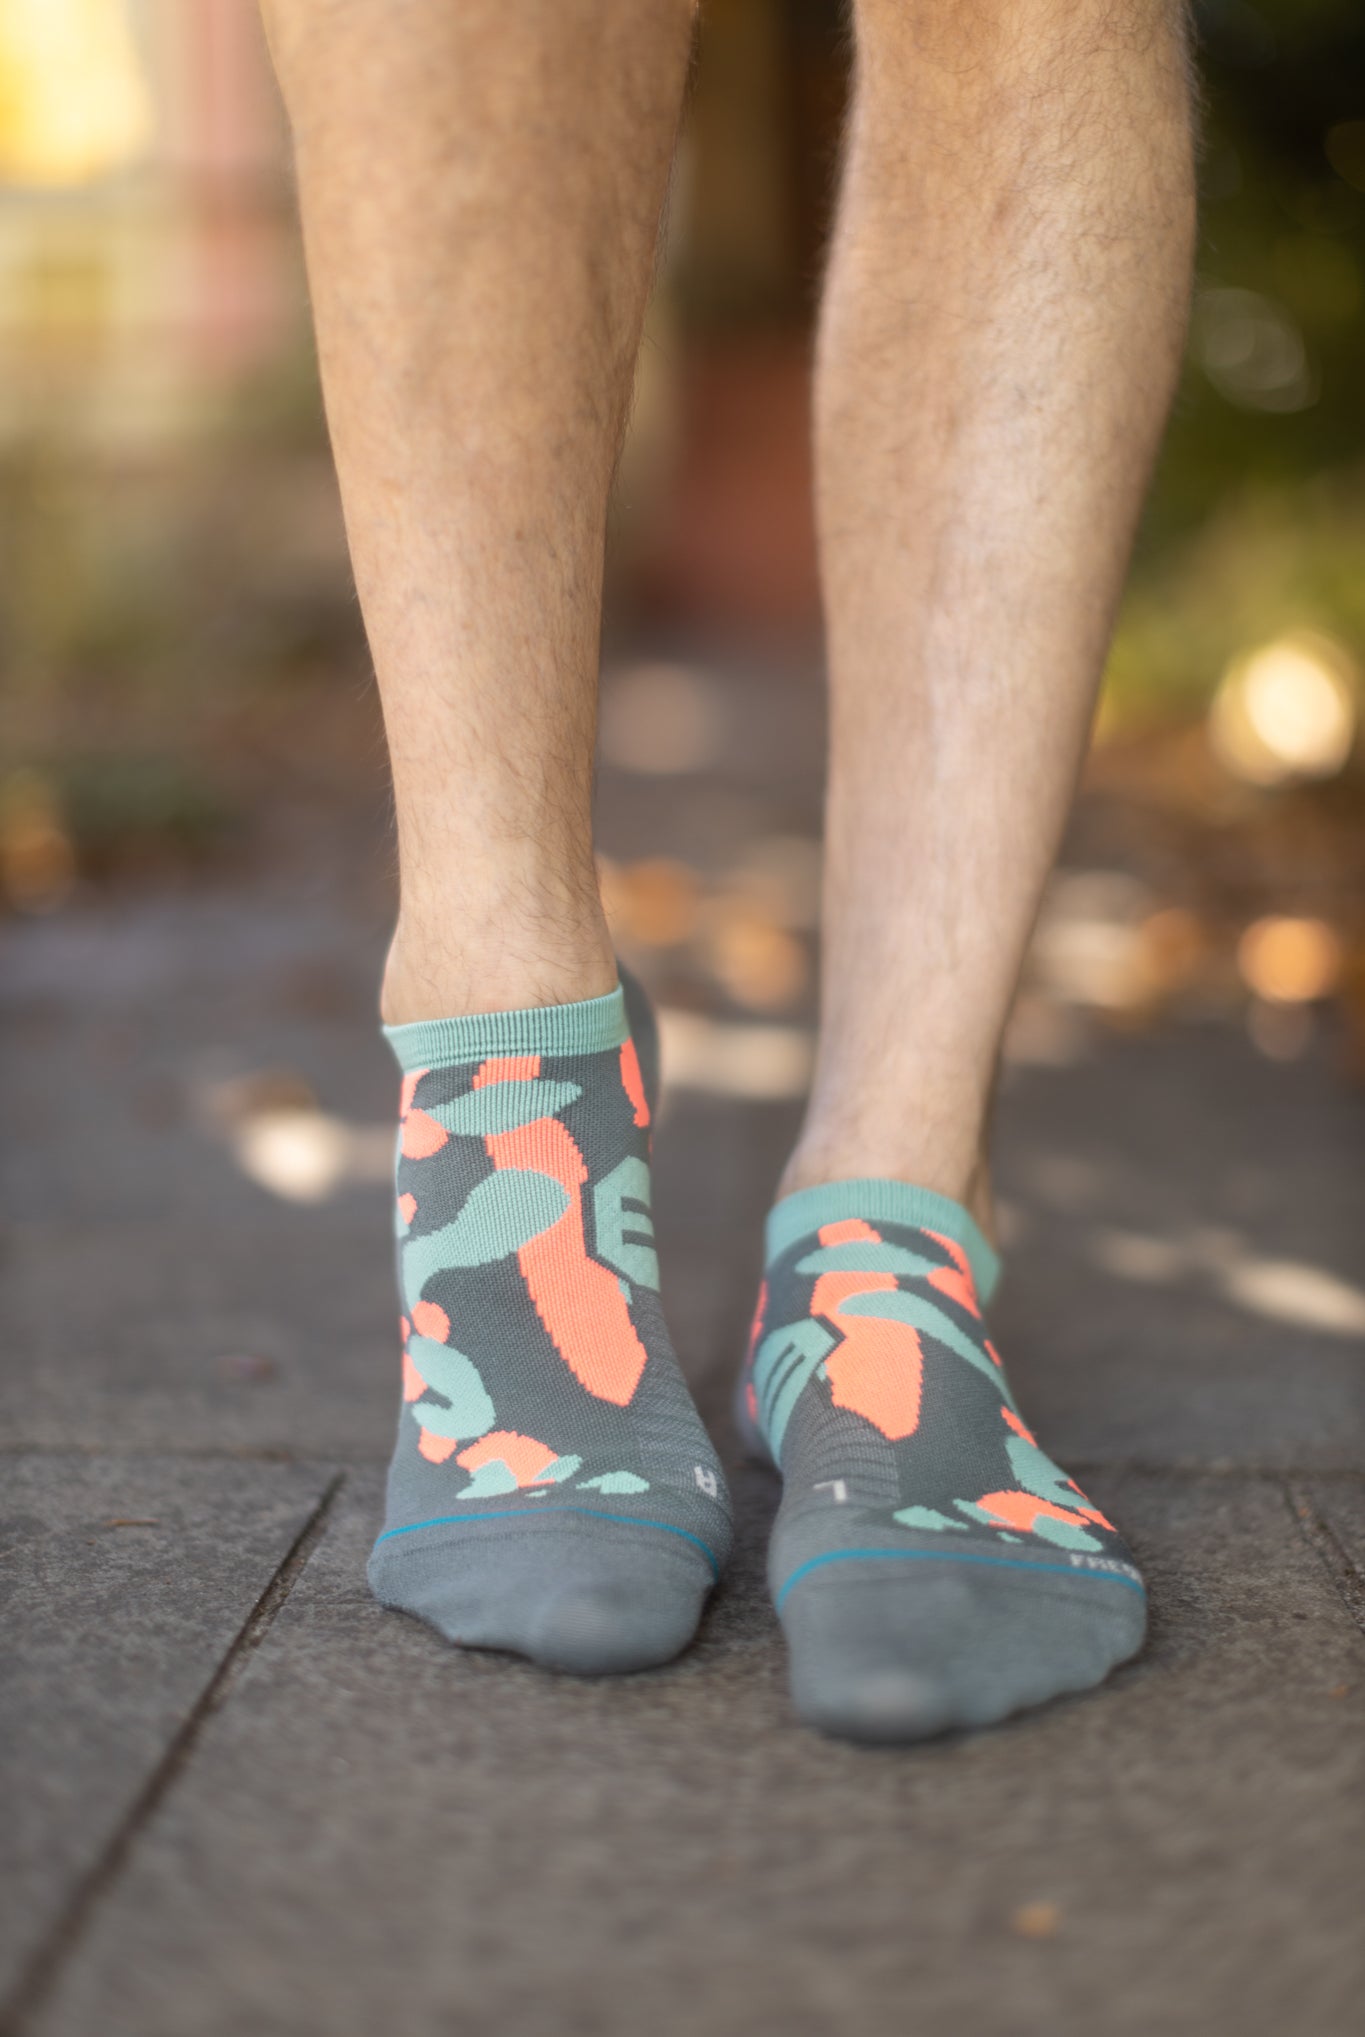 Footie Socks – Sock Dreams